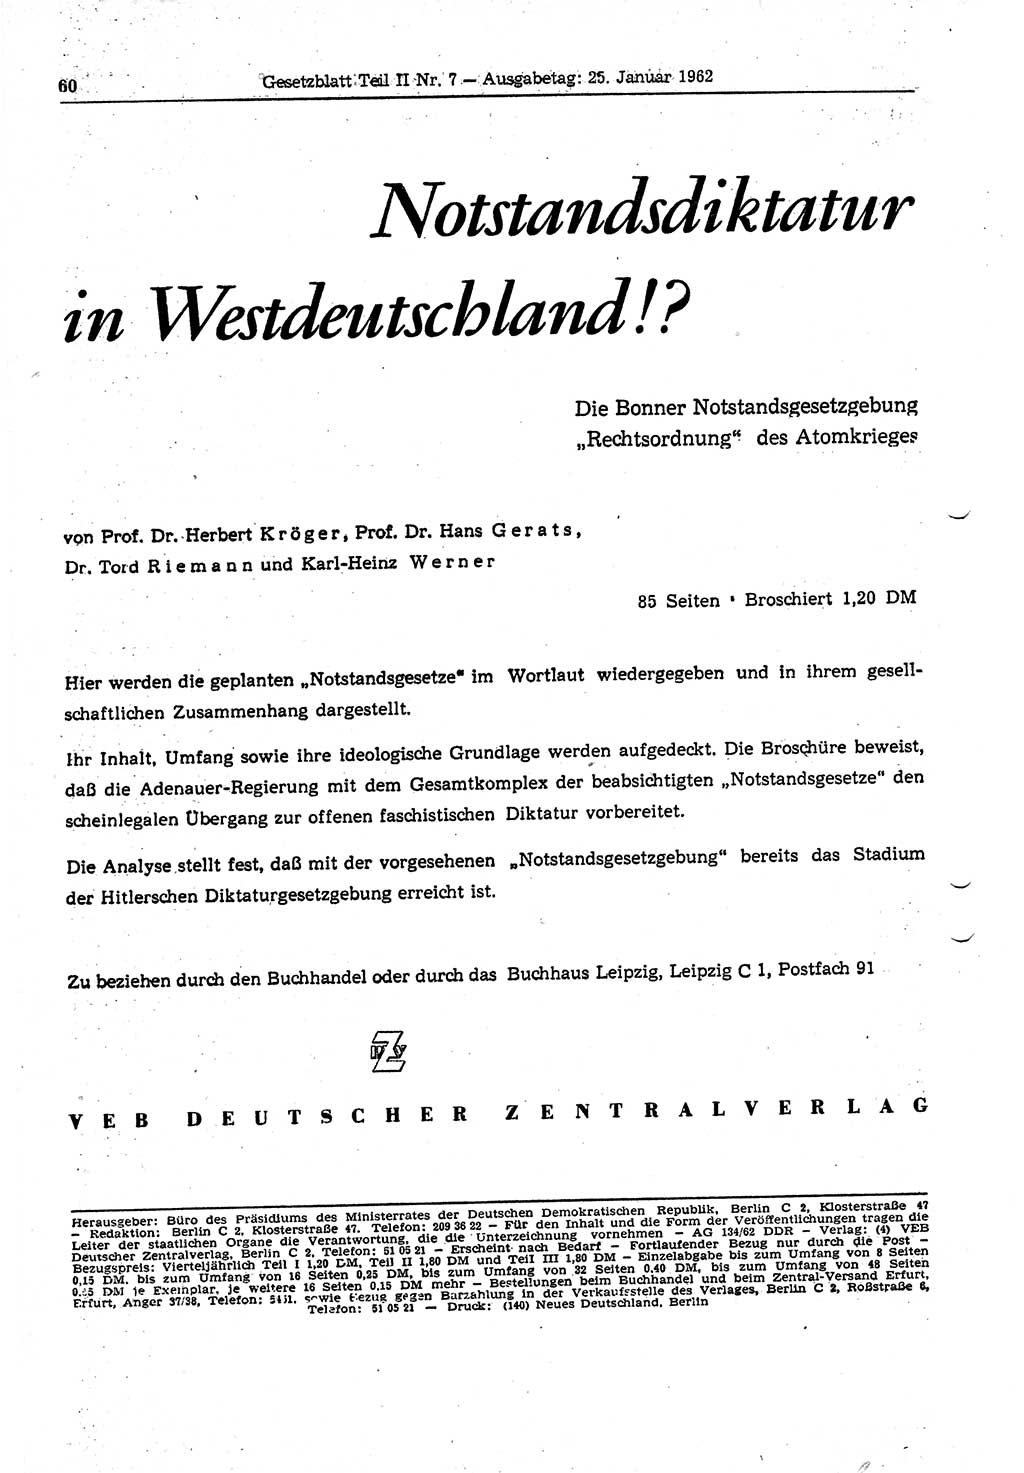 Gesetzblatt (GBl.) der Deutschen Demokratischen Republik (DDR) Teil ⅠⅠ 1962, Seite 60 (GBl. DDR ⅠⅠ 1962, S. 60)